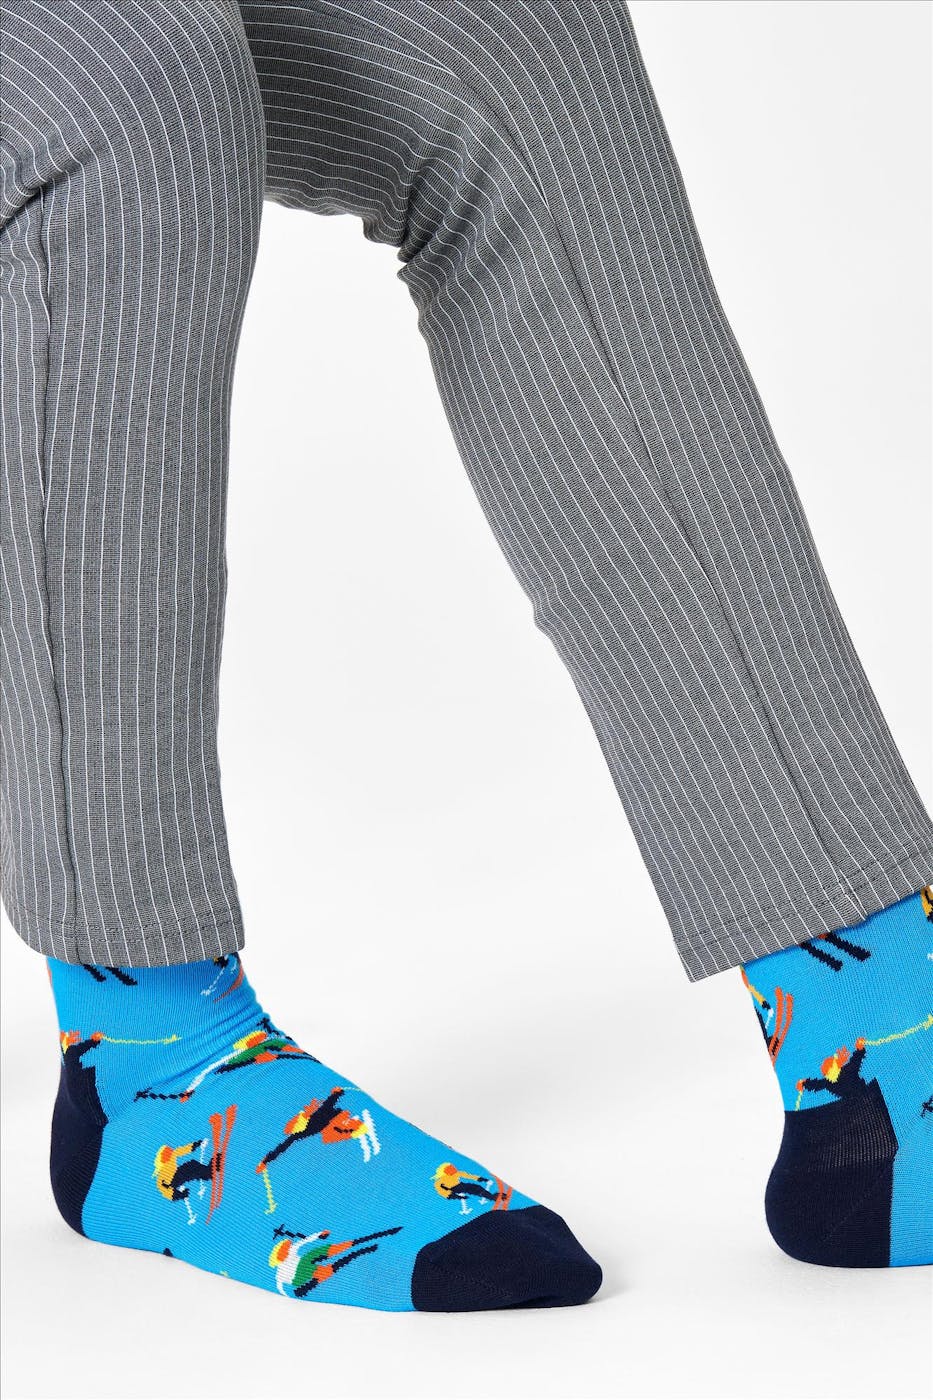 Happy Socks - Blauw-Zwarte Skiing Sokken, maat 36-40